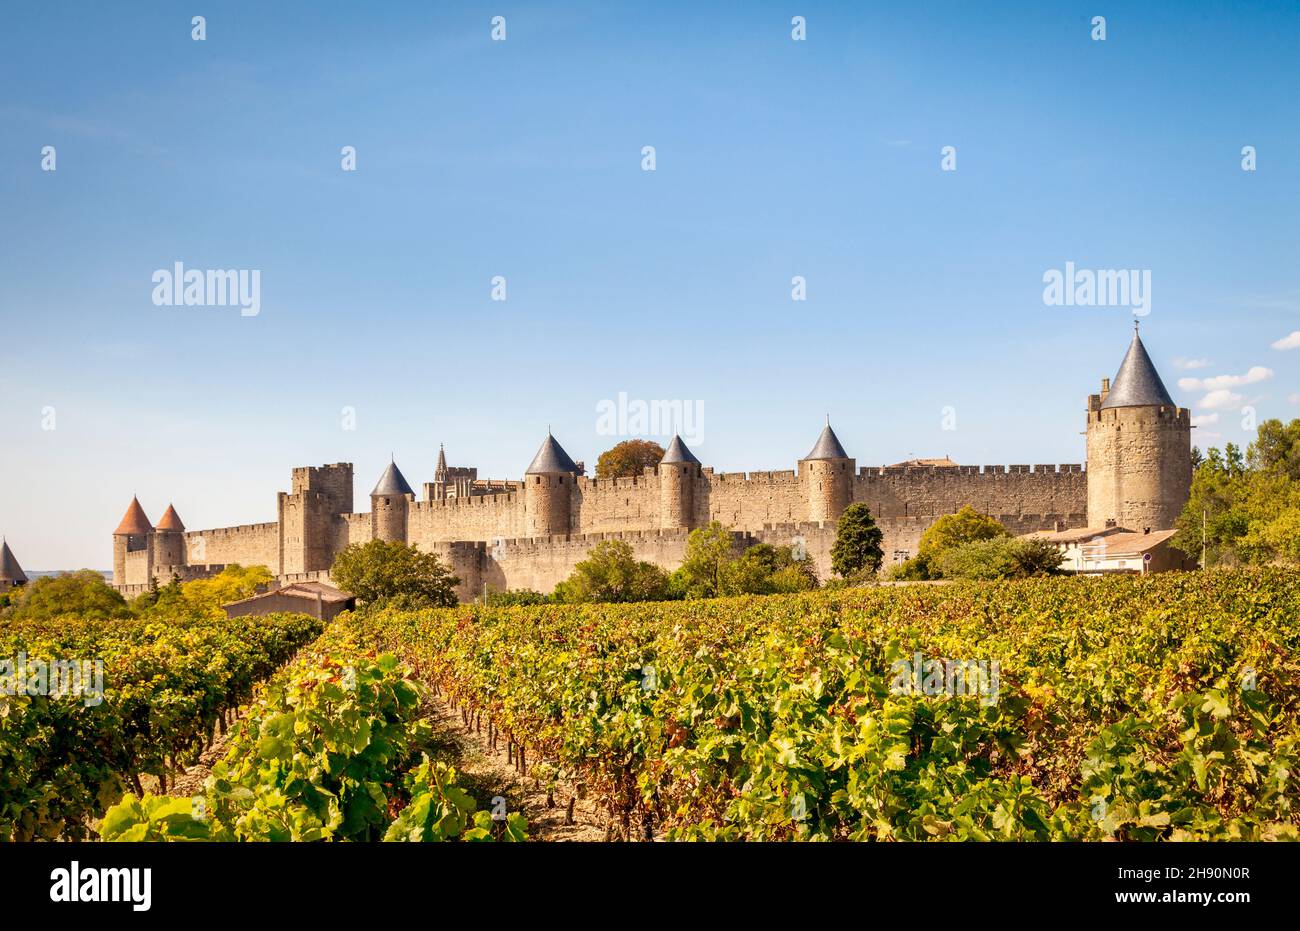 Die befestigte Stadt Carcassonne, gesehen über Weinberge am späten Nachmittag im Herbst. Stockfoto